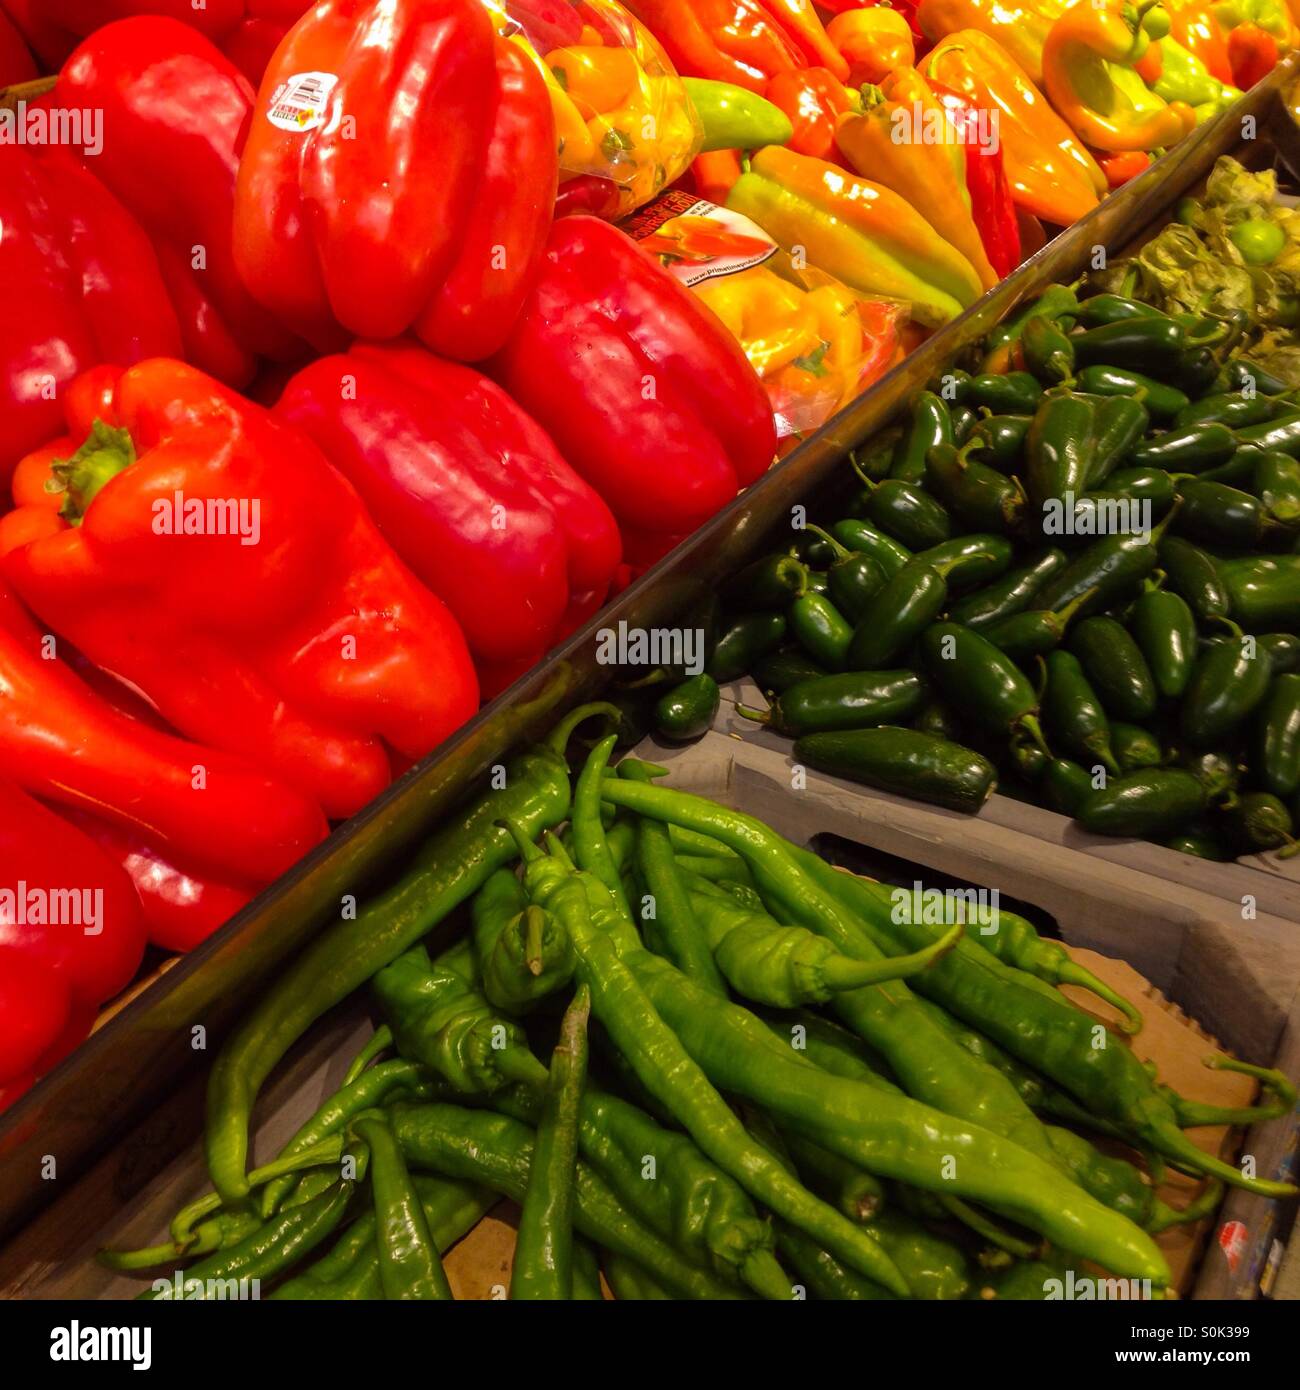 Amarillo rojo fresco y pimientos verdes en la sección de productos vegetales de un supermercado, tienda de ultramarinos. Verduras saludables alimentos. Foto de stock